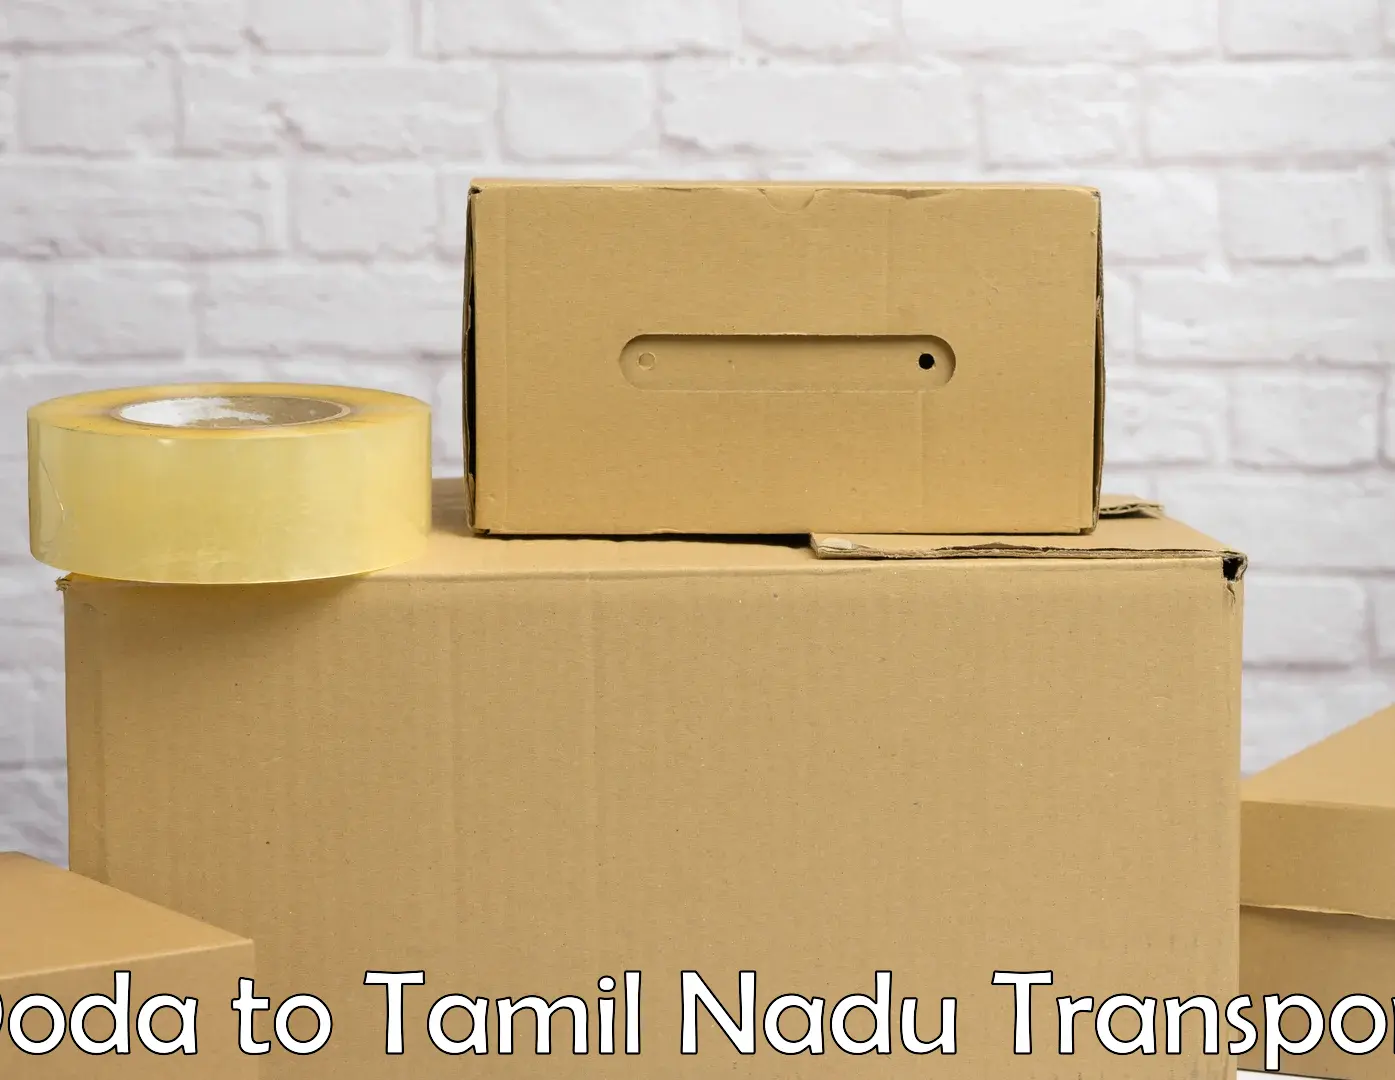 Container transport service Doda to Tiruchendur